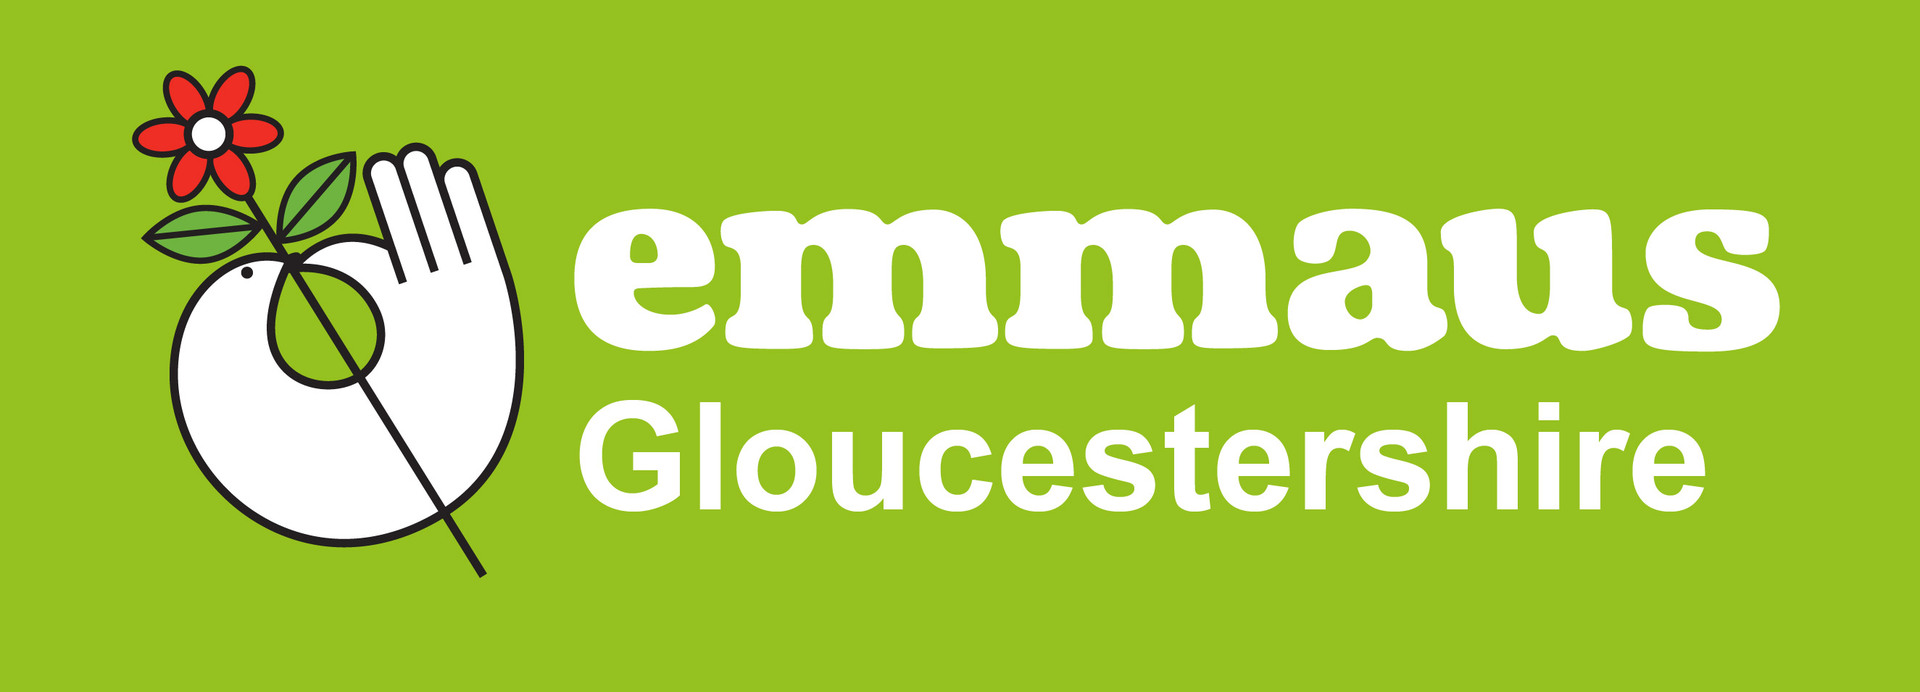 Gloucestershire logo